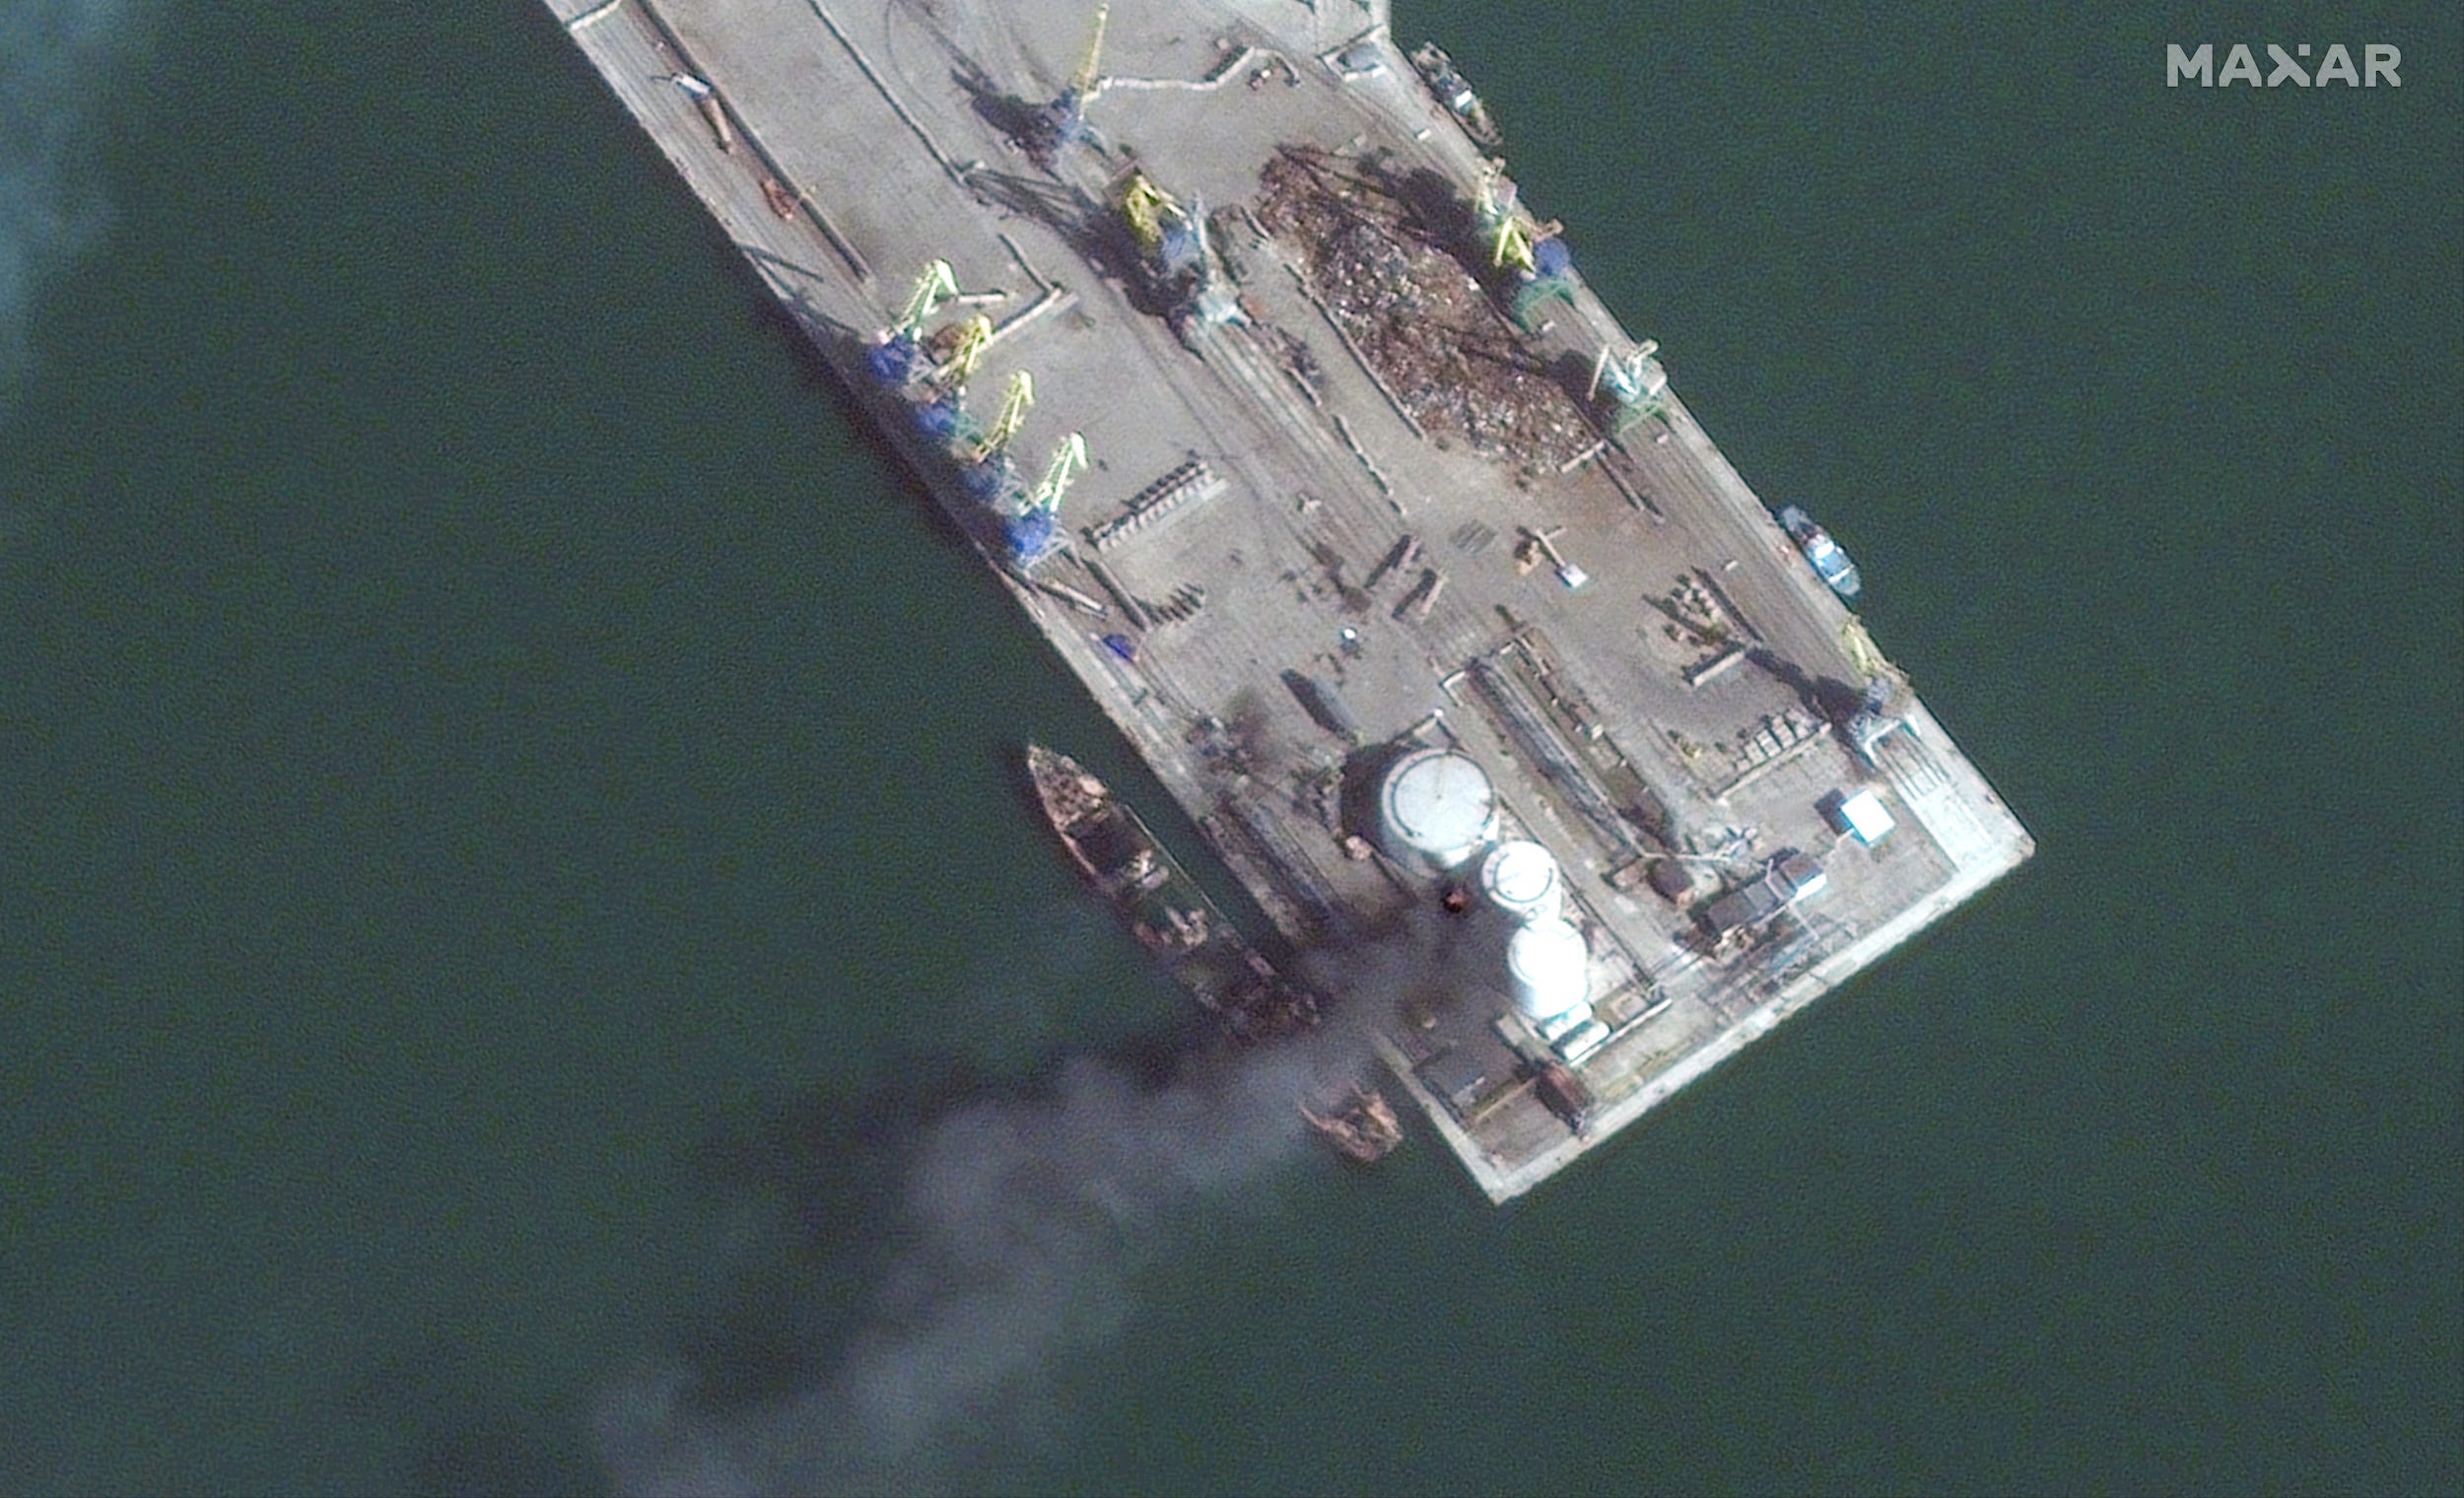 Satellitenbilder zeigen ein brennendes russisches Amphibienkriegsschiff im Hafen von Berdjansk, nachdem es in Match 24 von ukrainischen Streitkräften angegriffen wurde.